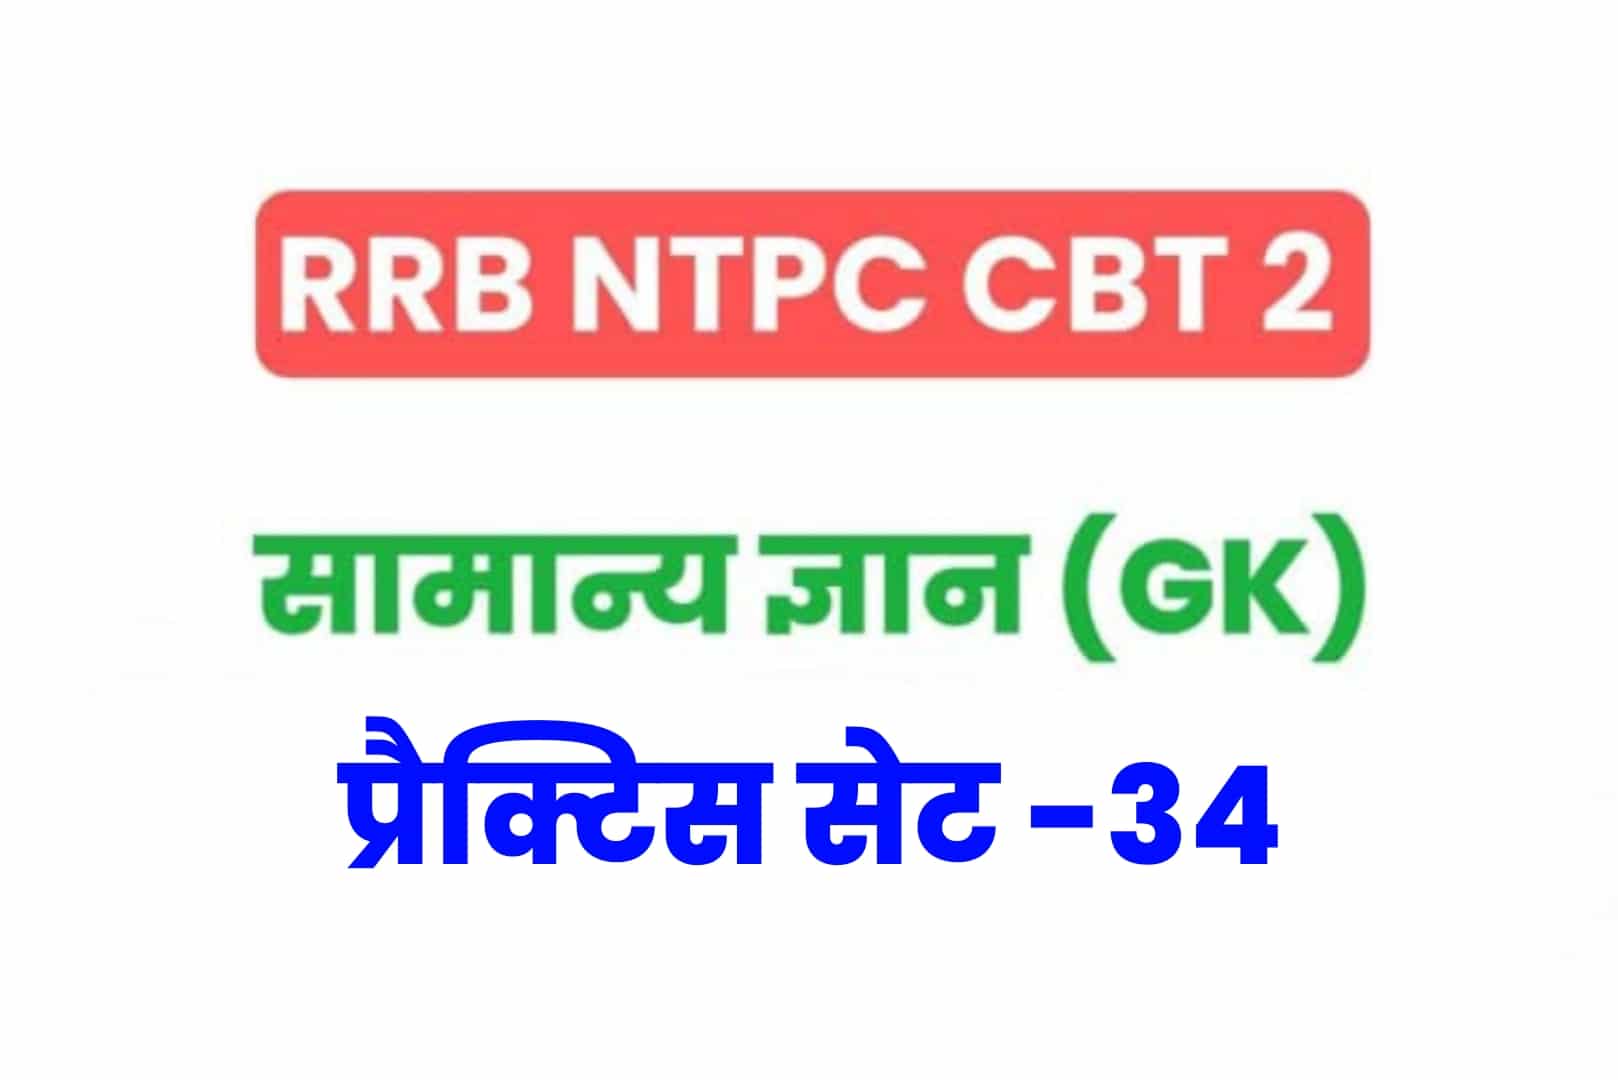 RRB NTPC CBT 2 GK प्रैक्टिस सेट 34: परीक्षा में शामिल होनें से पूर्व सामान्य ज्ञान के 25 महत्वपूर्ण  MCQ को अवश्य देखें